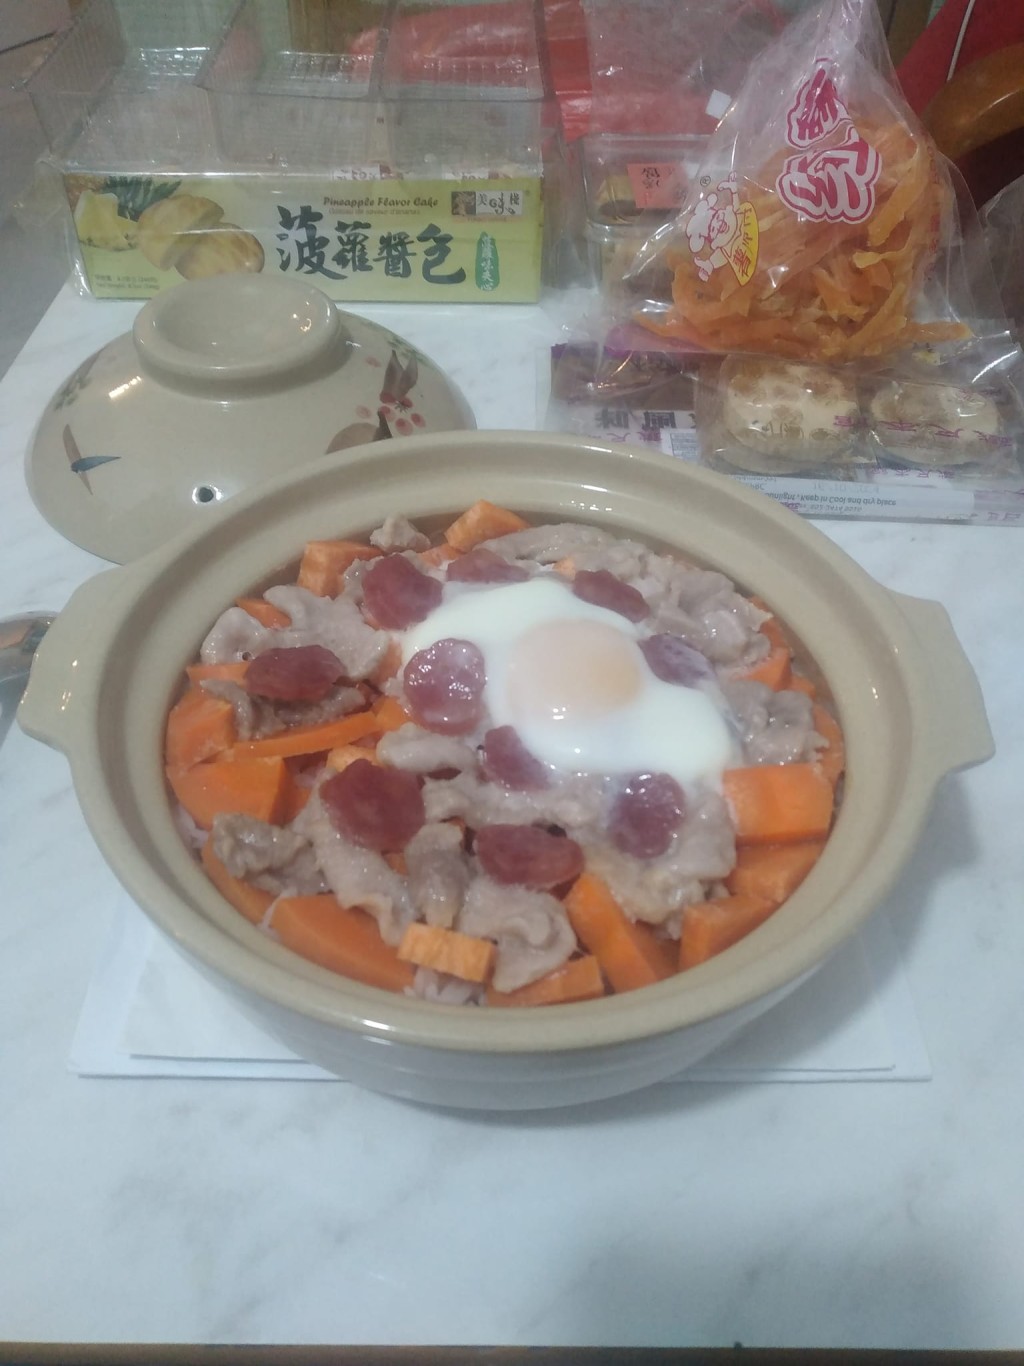 红萝卜粒 腊肠片 猪肉片 太阳蛋 煲仔饭（图片来源：Facebook@香港茶餐厅及美食关注组）